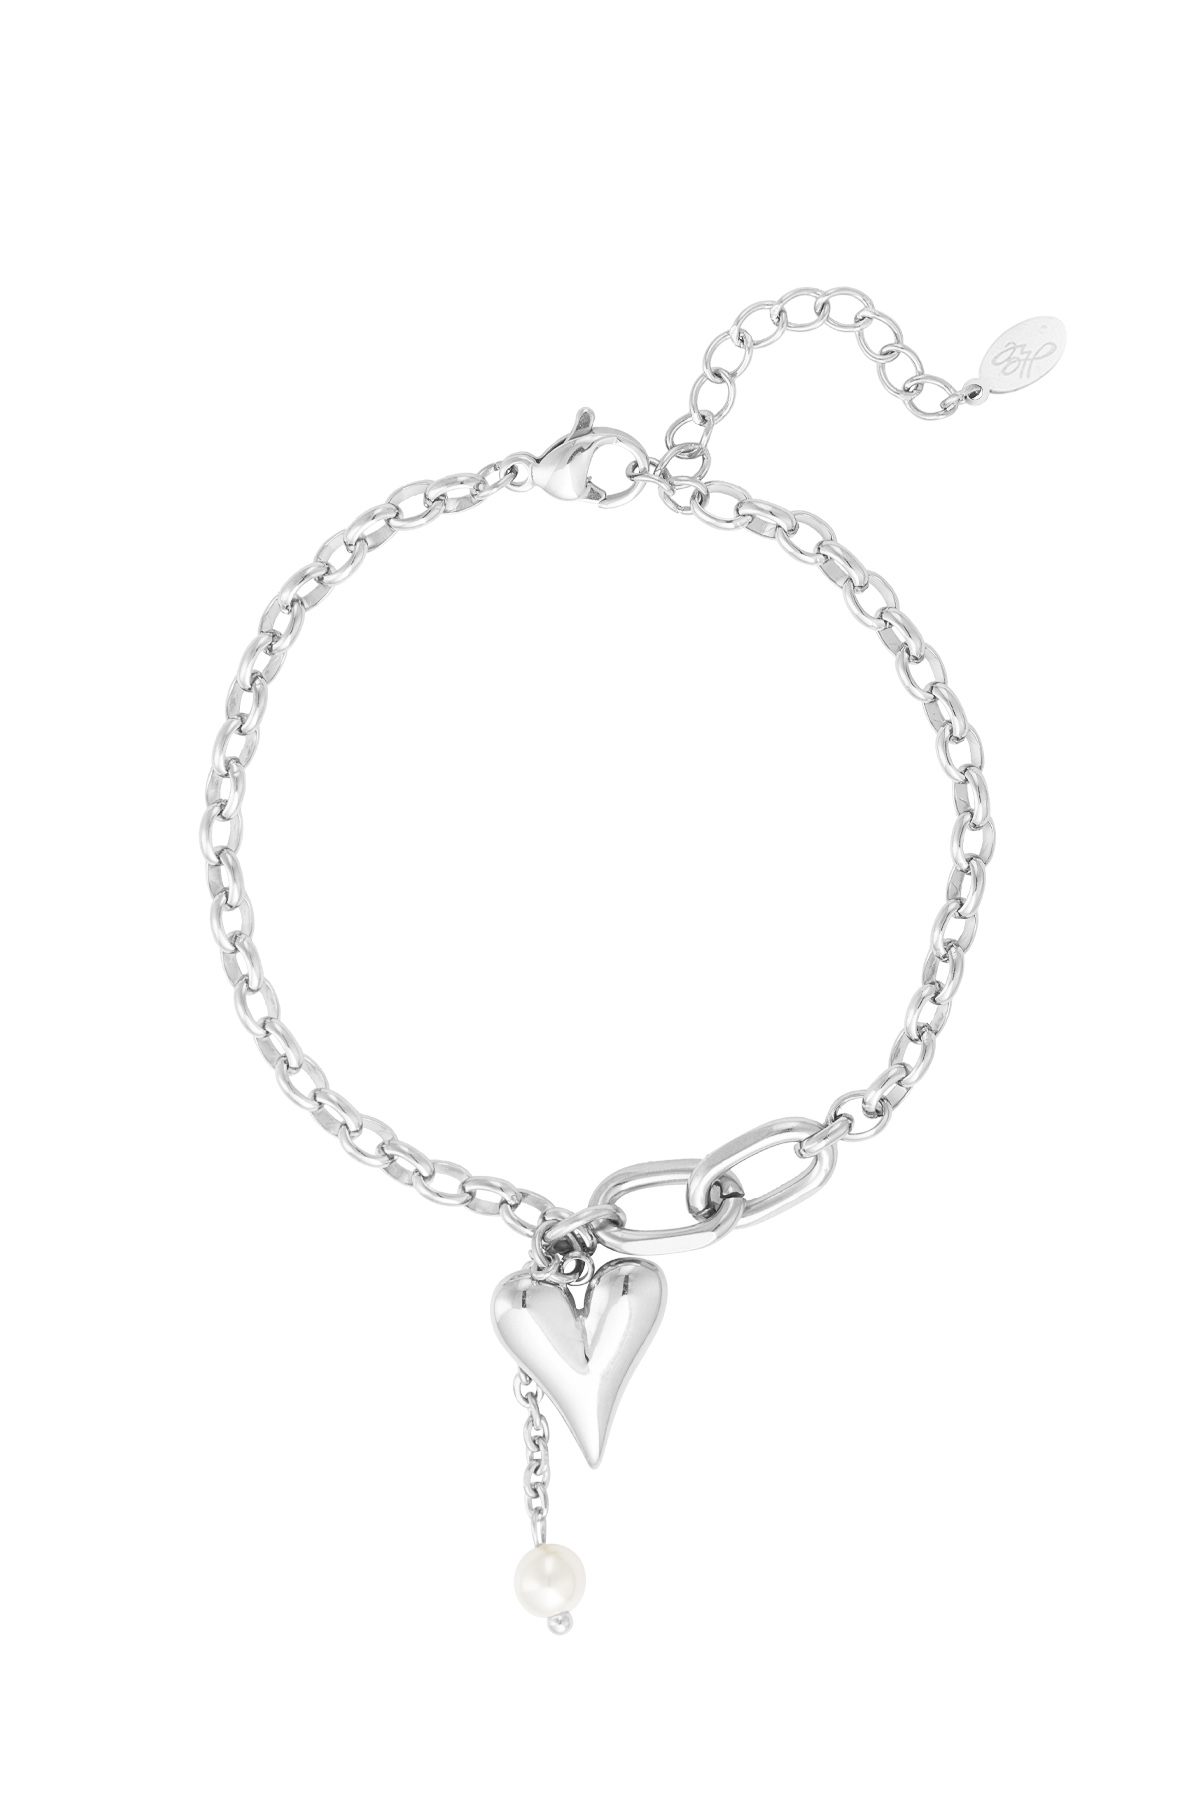 Bracelet lovely hearts - silver